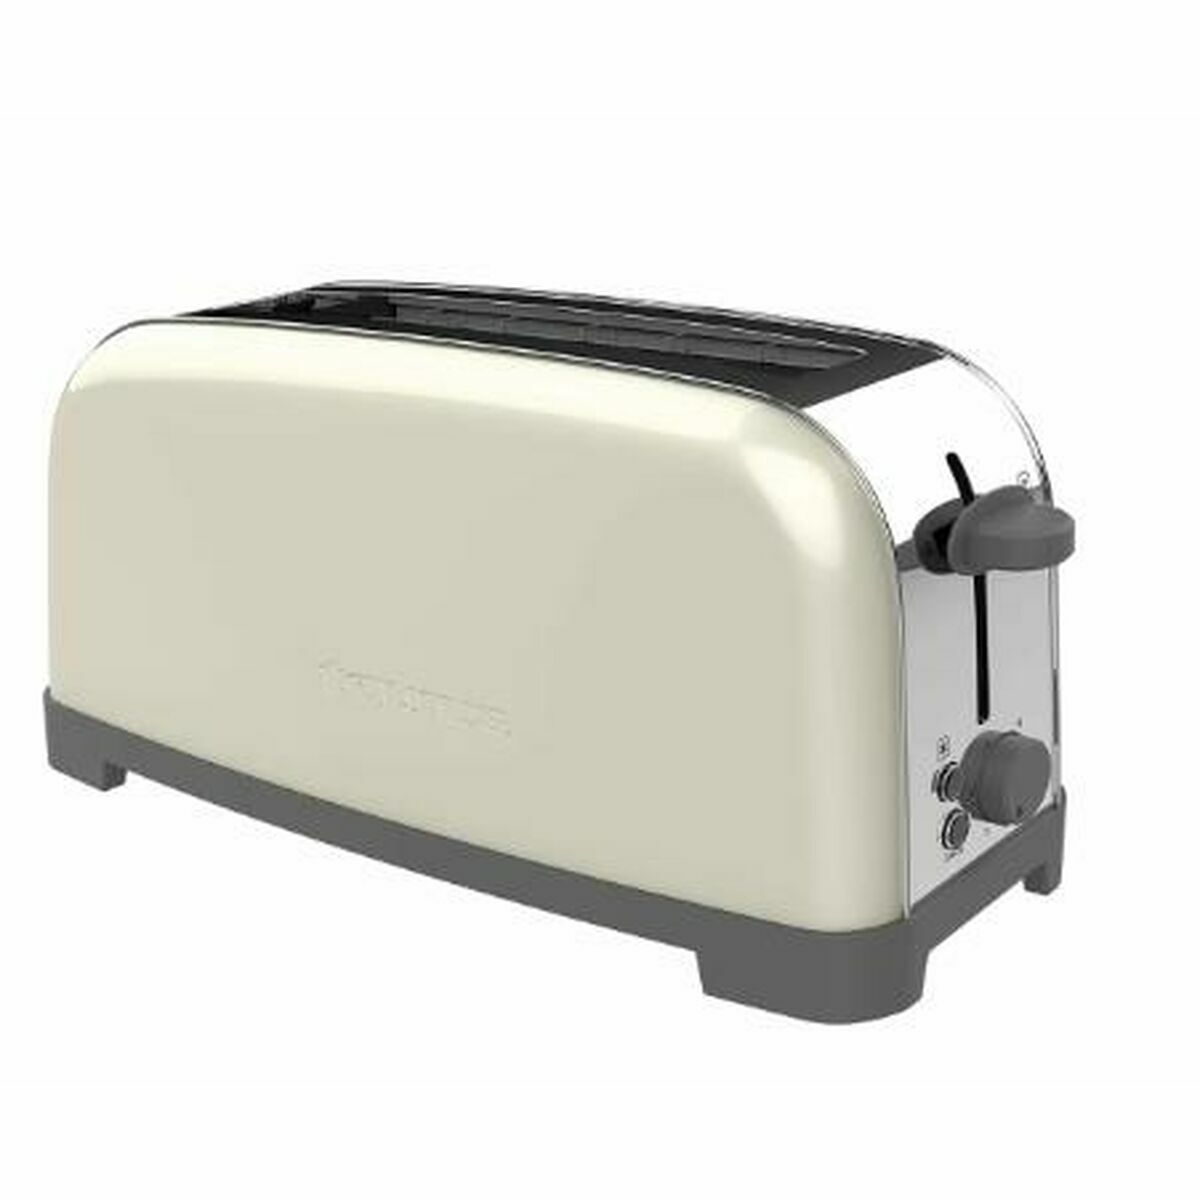 Toaster Taurus VINTAGE CREAM S Weiß 1400 W - CA International 